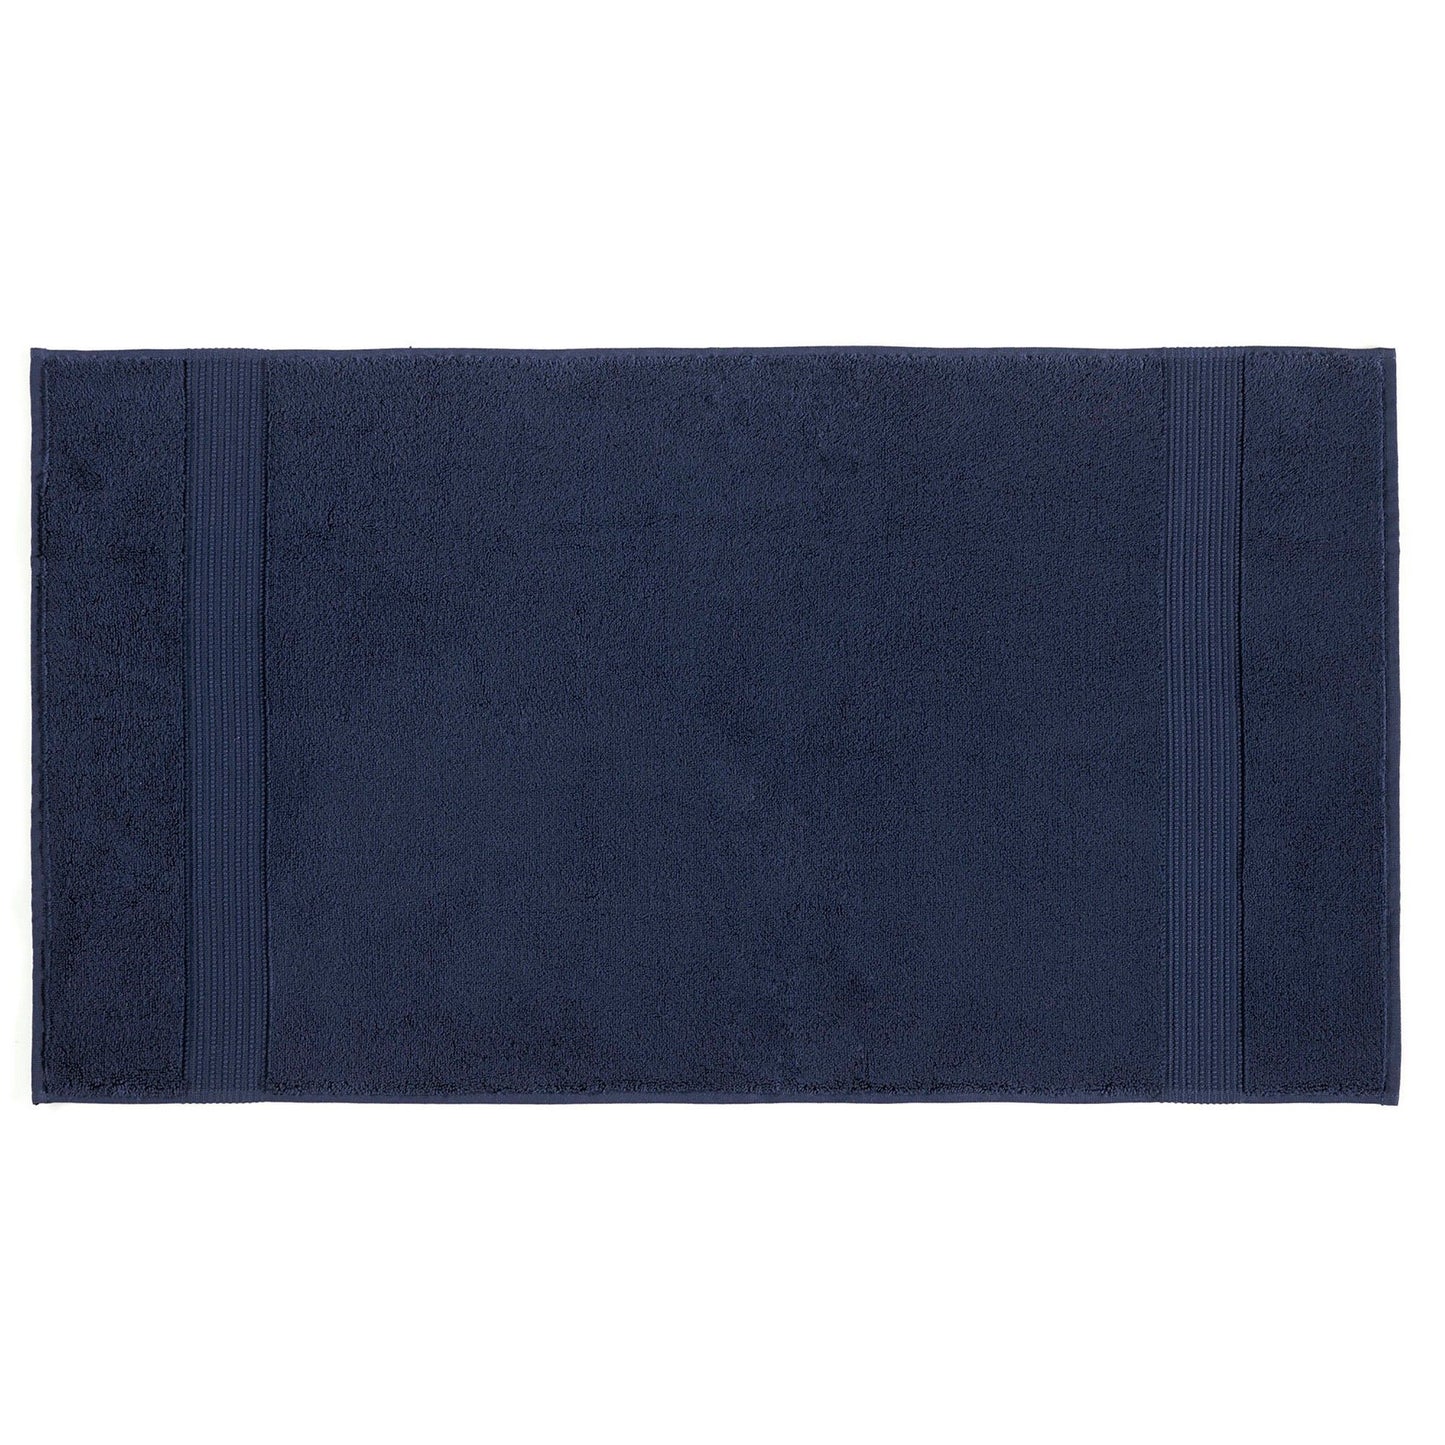 Håndklæde -  Chicago Bath (70 x 140) - Mørkeblå